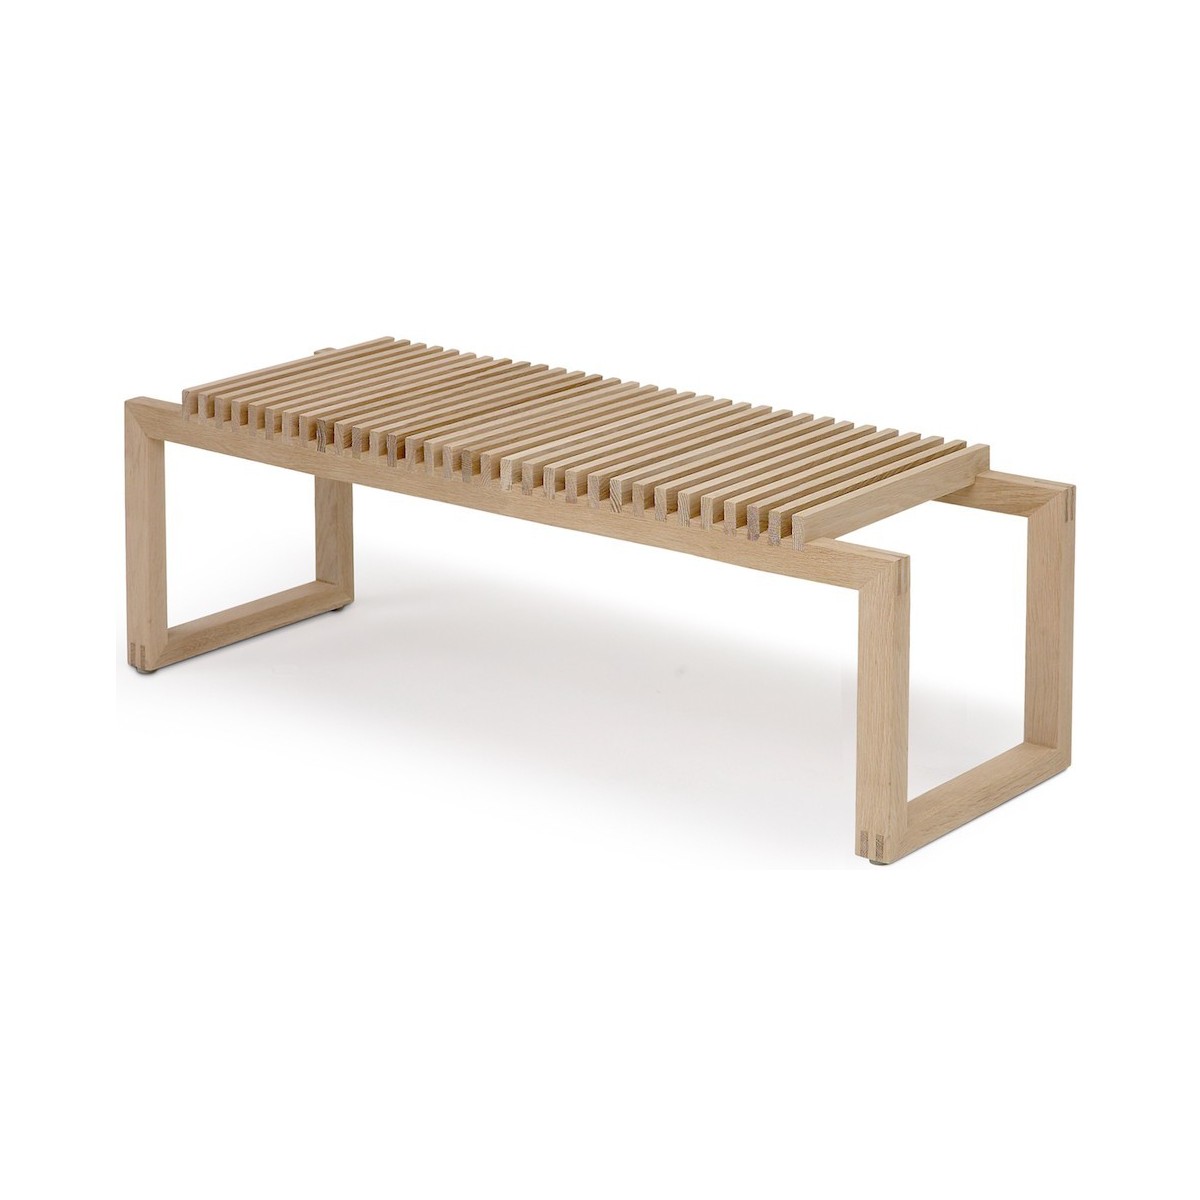 oak - Cutter bench